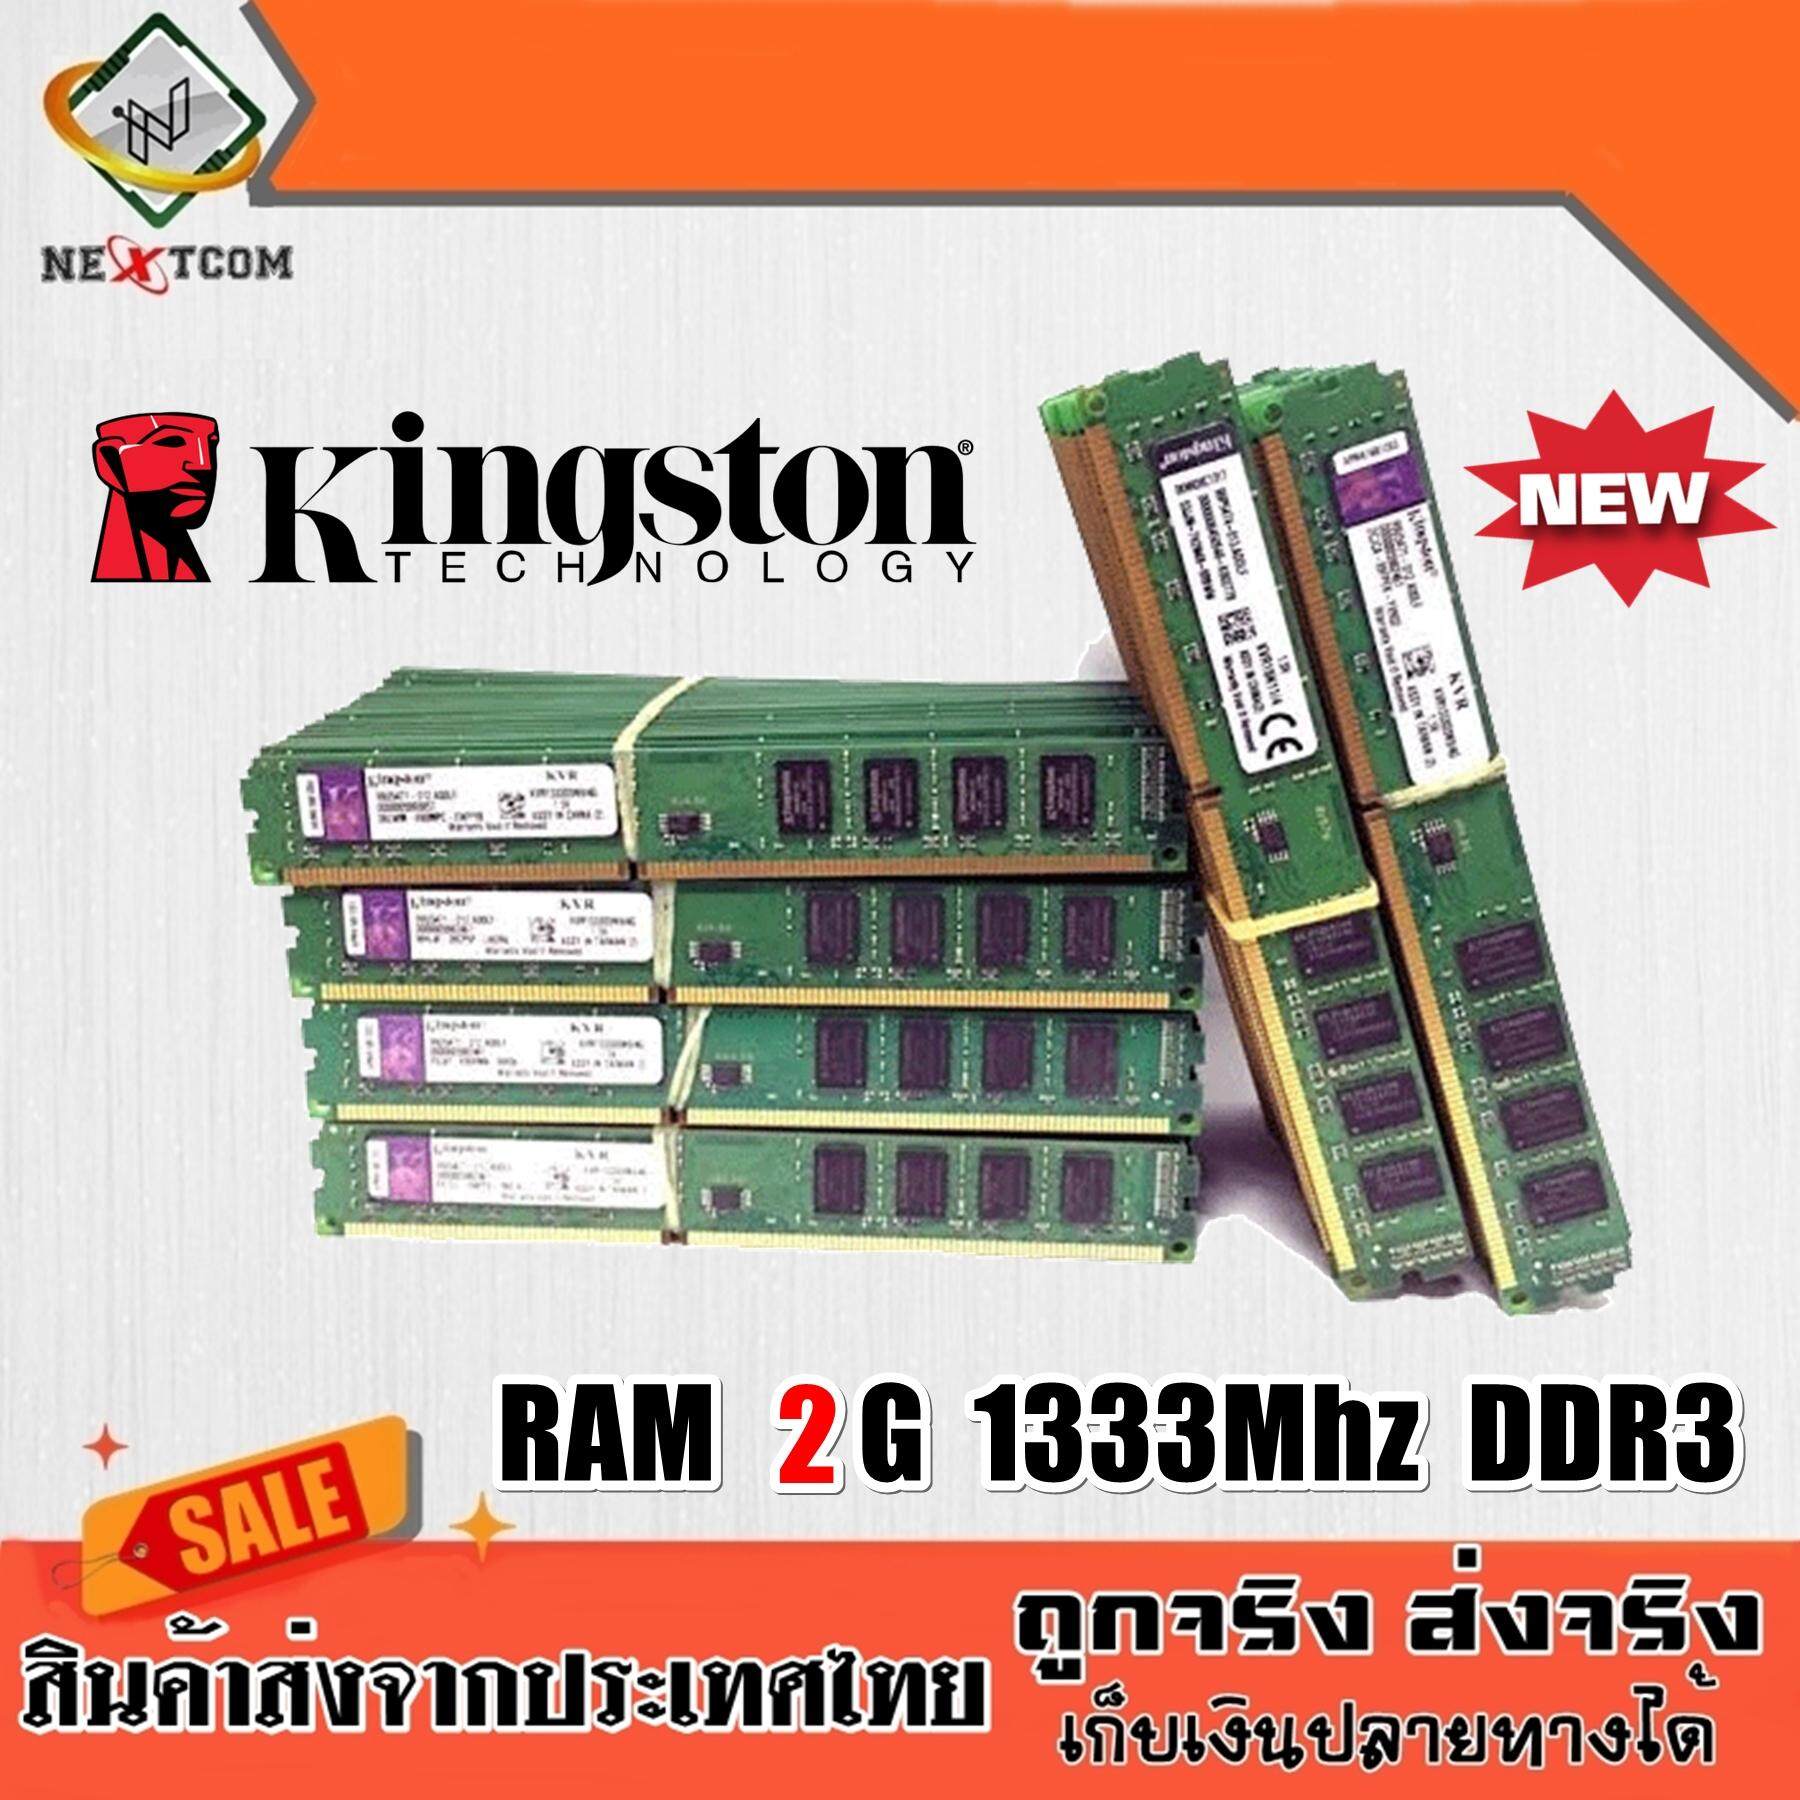 แรม RAM Kingston 2G 1333Mhz DDR3 16ชิพ ประกัน 6 เดือน จัดส่งไว